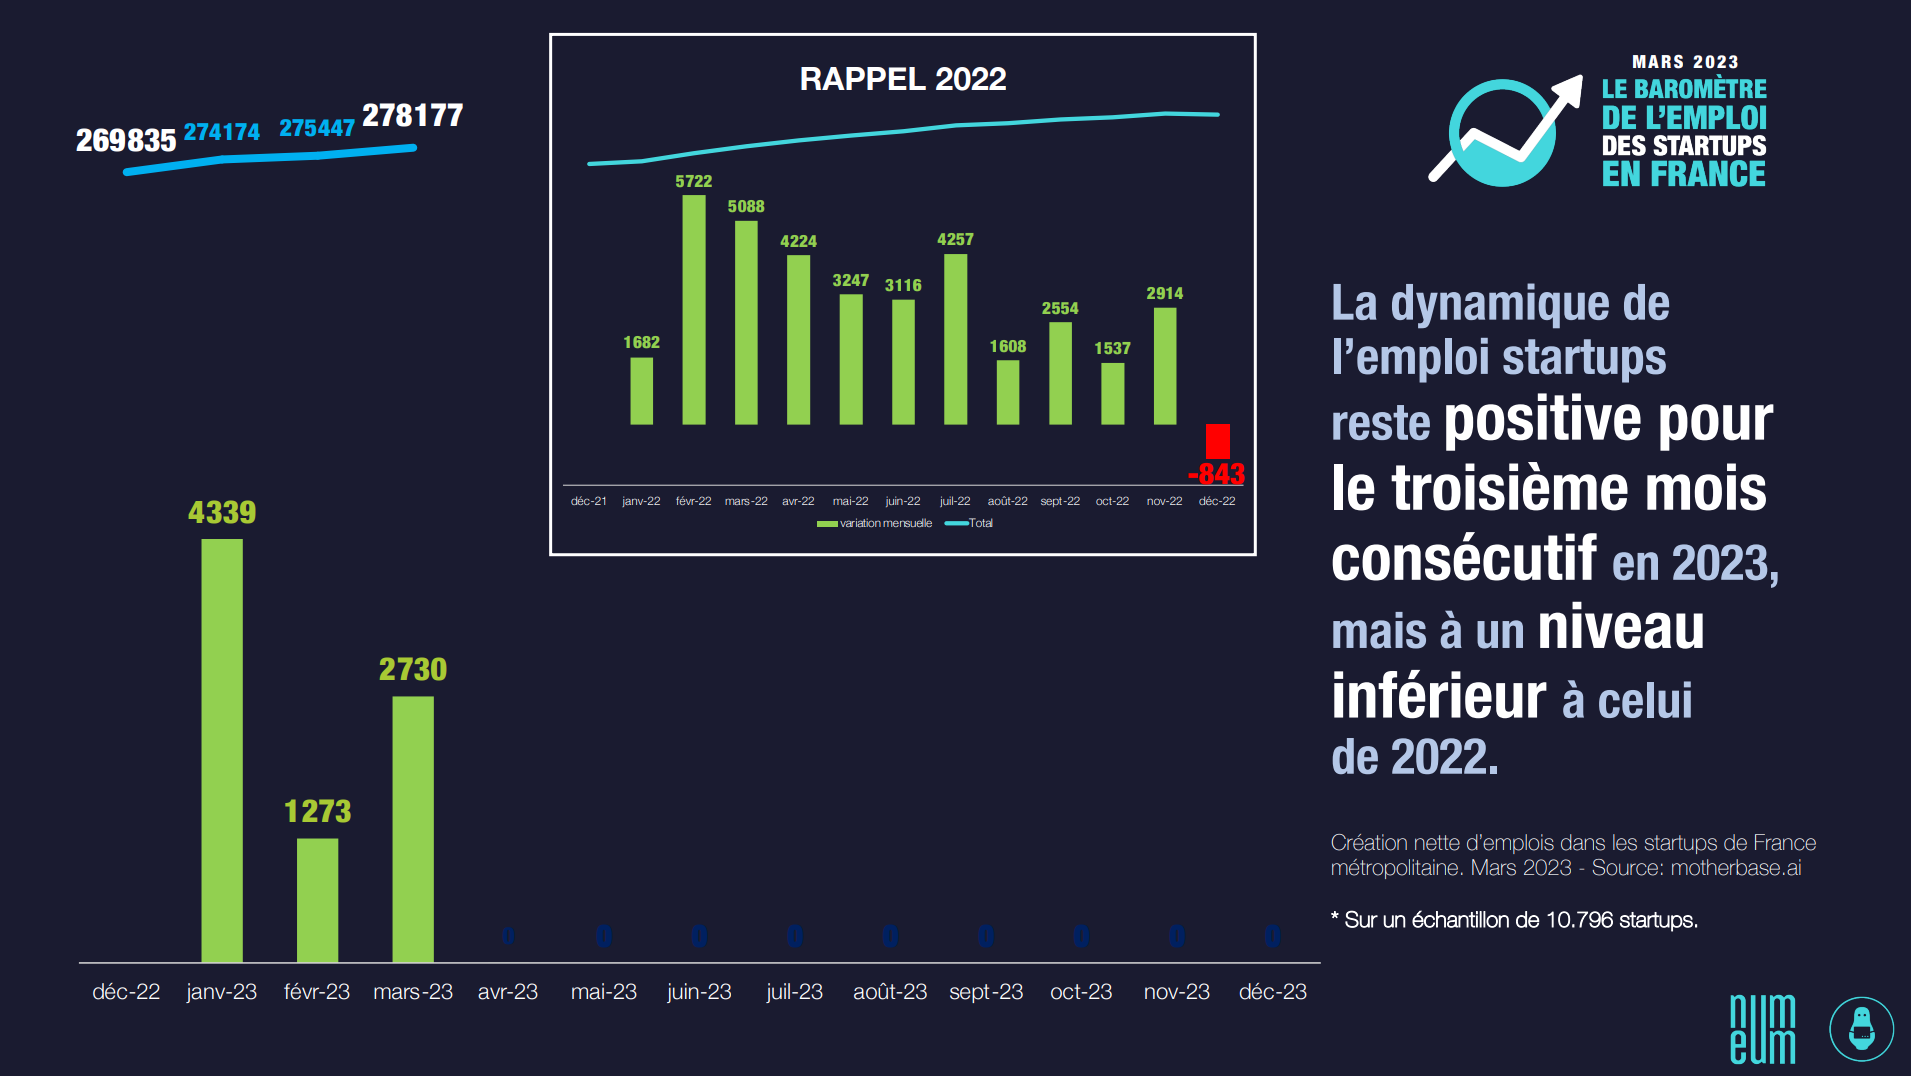 Le marché de l’emploi dans les startups françaises confirme sa capacité de résilience en mars